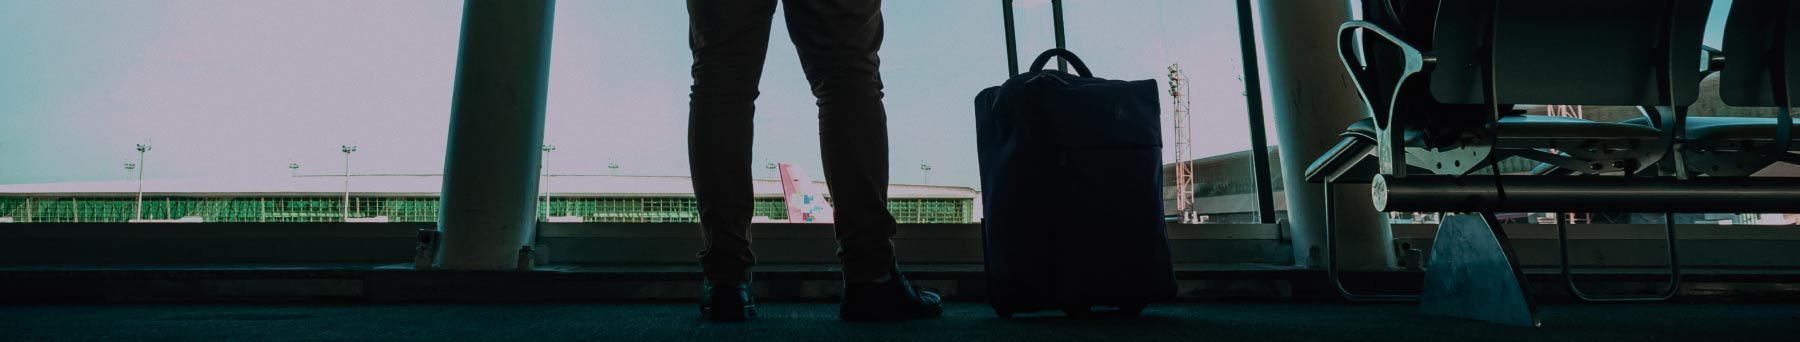 Líquidos permitidos en el avión: ¿Los llevo en el equipaje de mano o en mi  equipaje facturado? – Blog Travelwise